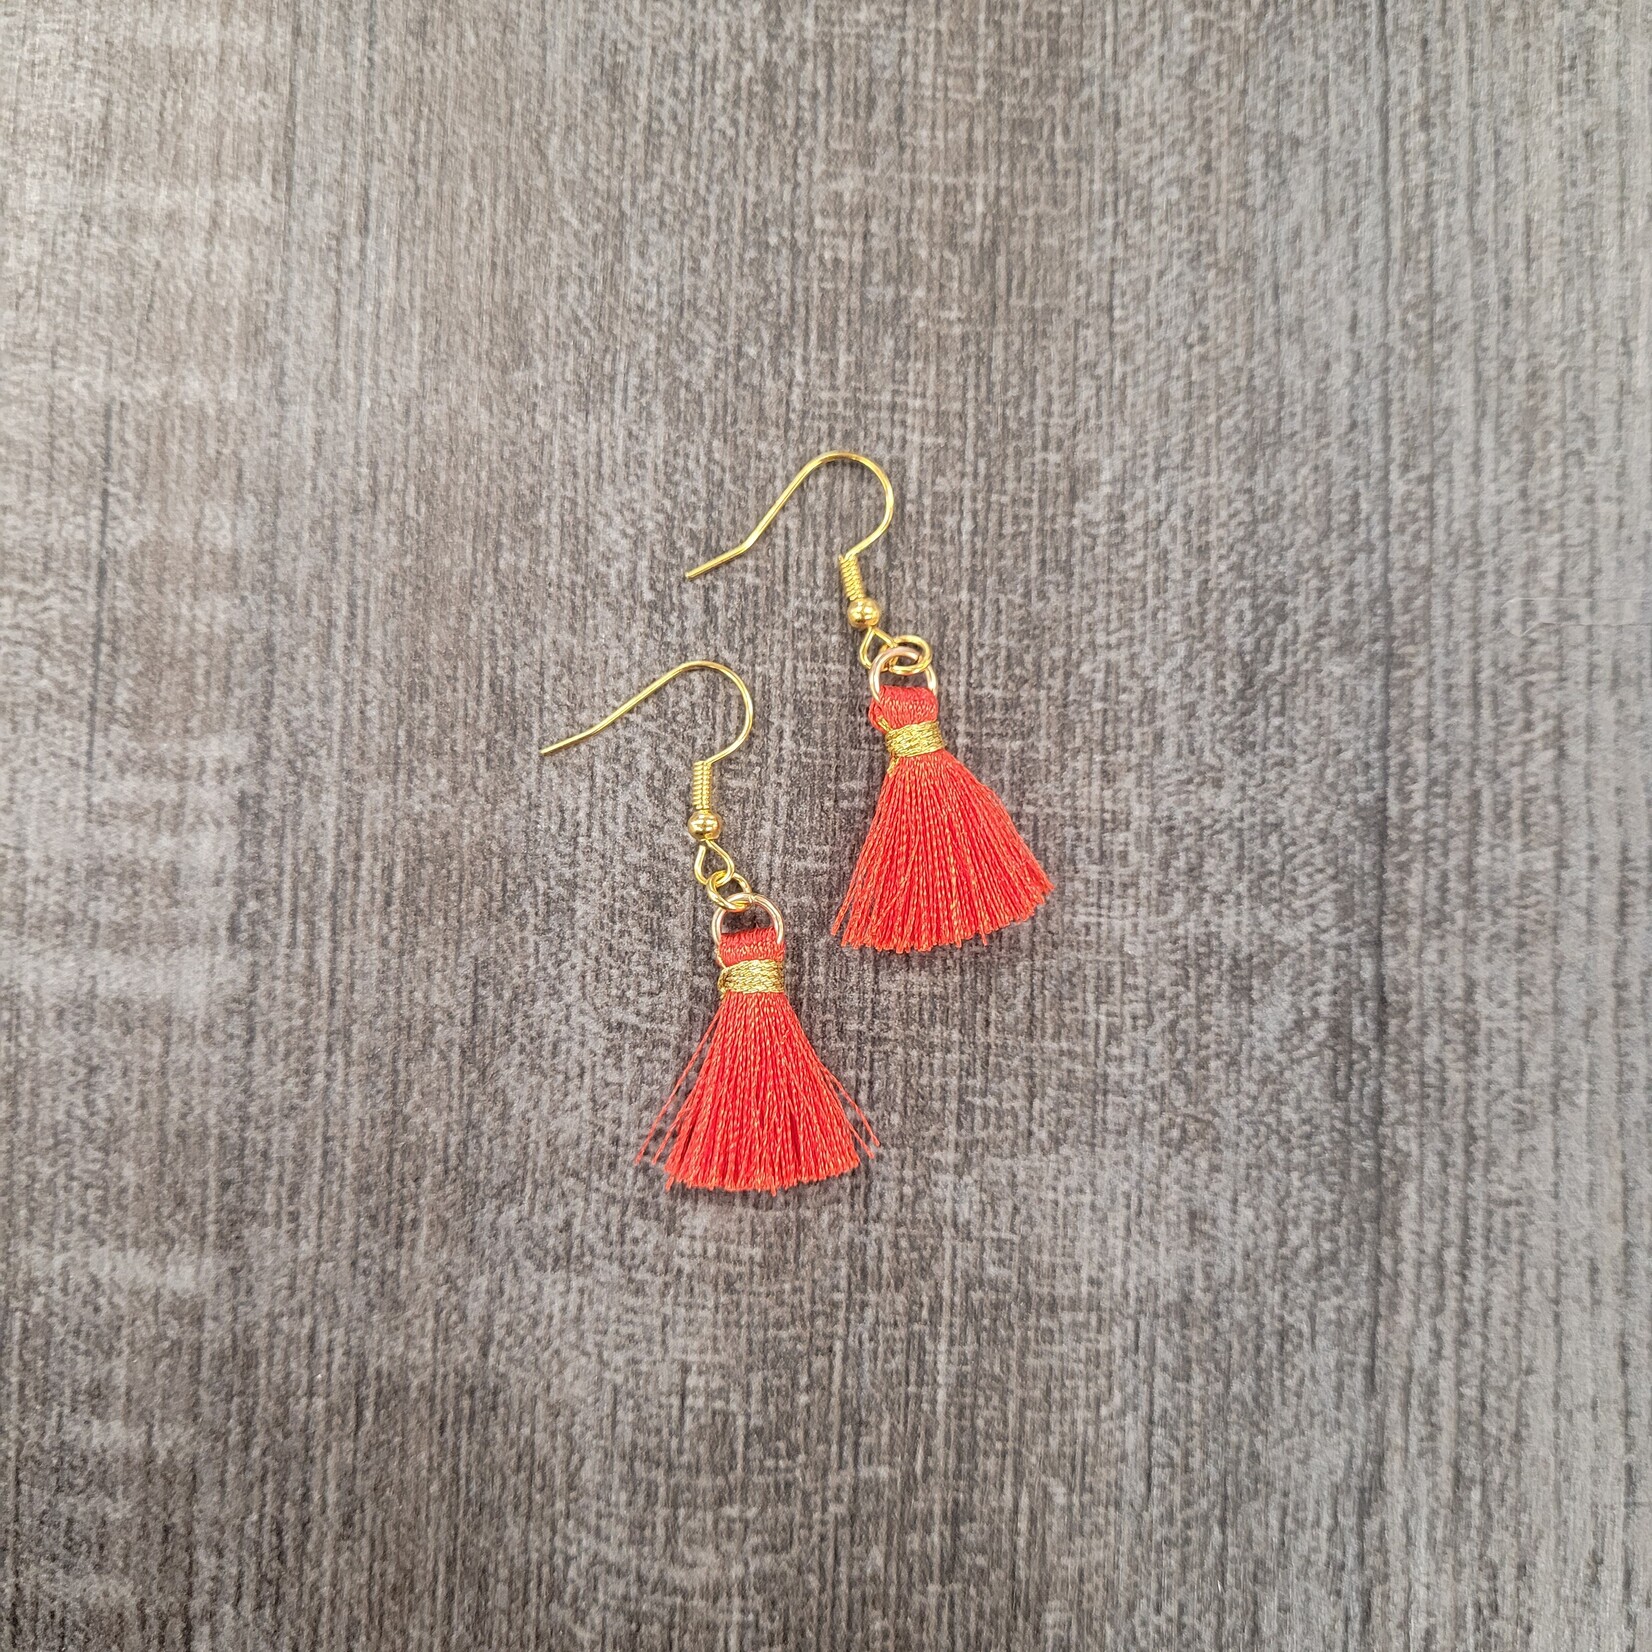 3/4 in Petite Red Tassel Earrings